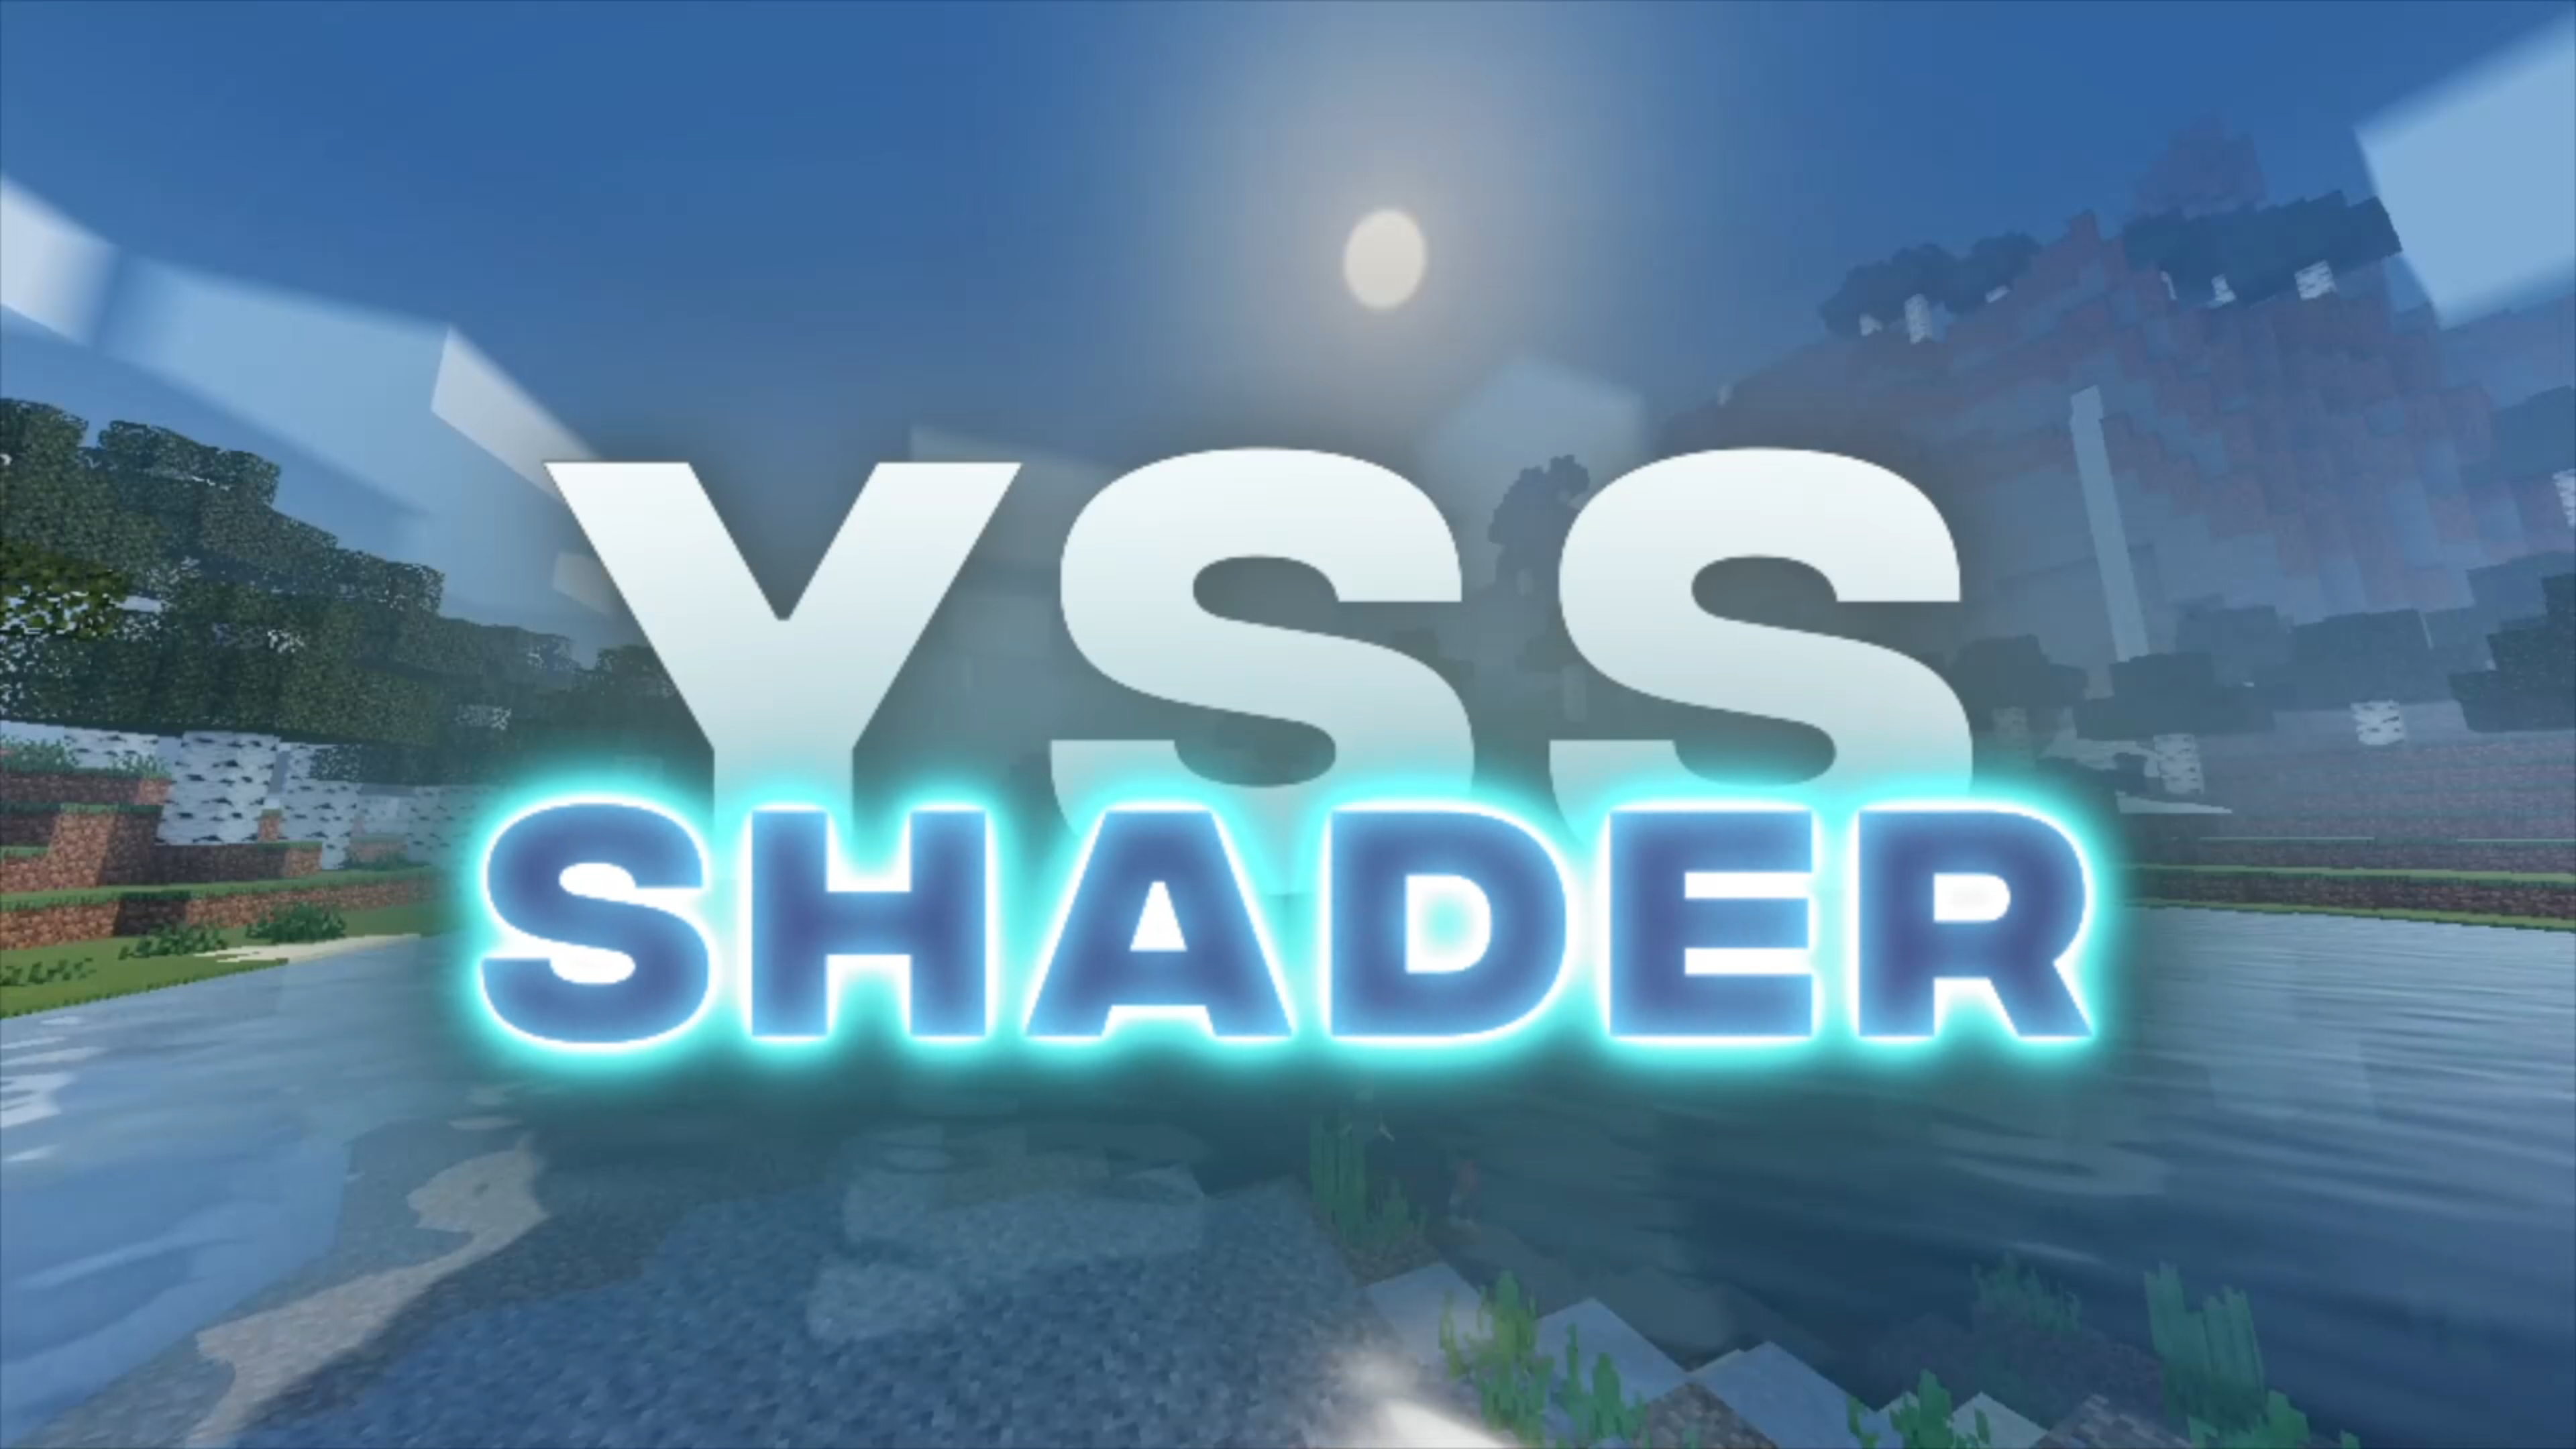 Yss Shader: El Shader realista mas deseado en Minecraft Bedrock ver. 1.20